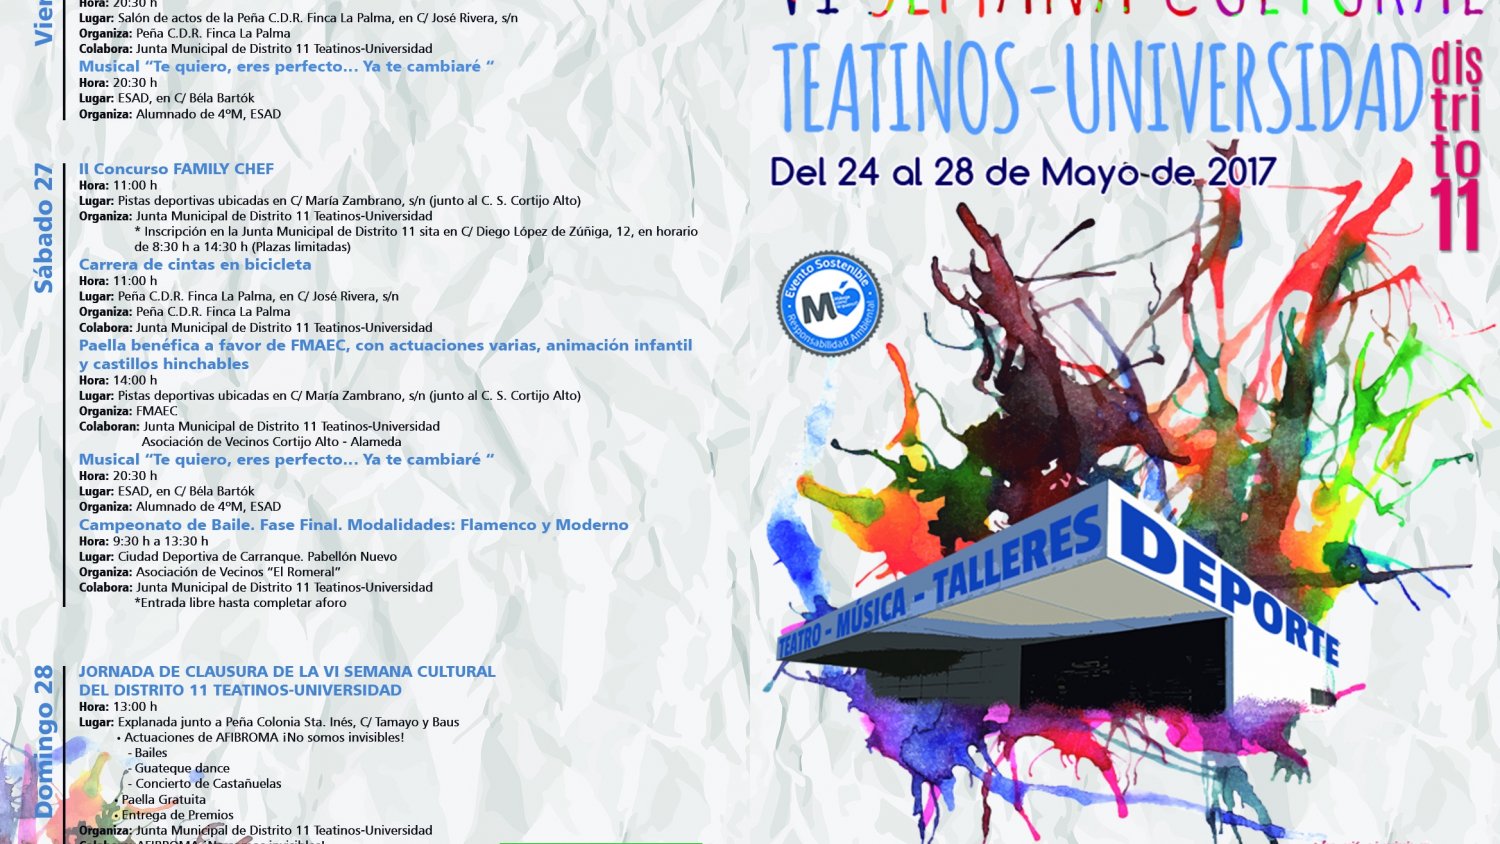 Comienza la semana cultural del distrito 11 Teatinos-Universidad que ofrece cerca de 30 actividades